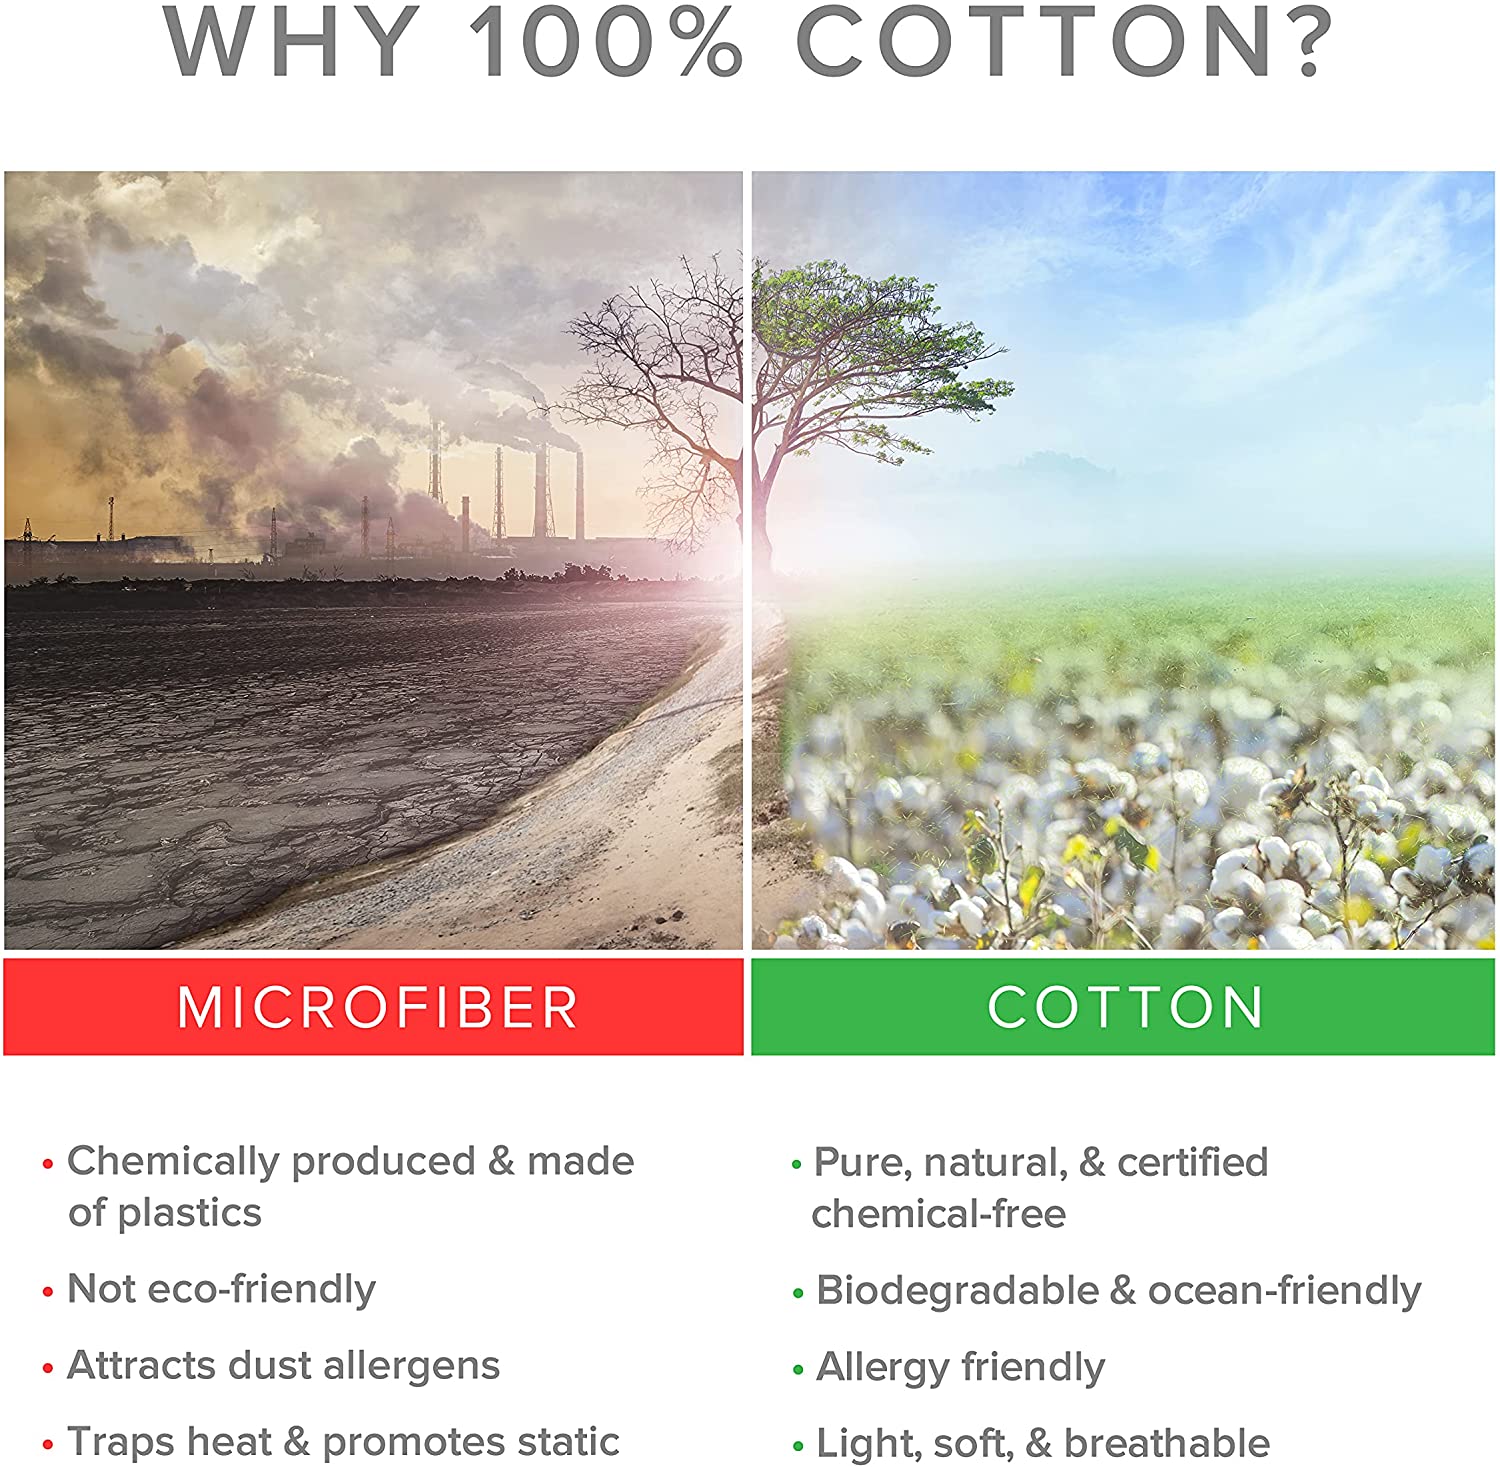 Why 100% cotton?: Microfiber vs. Cotton